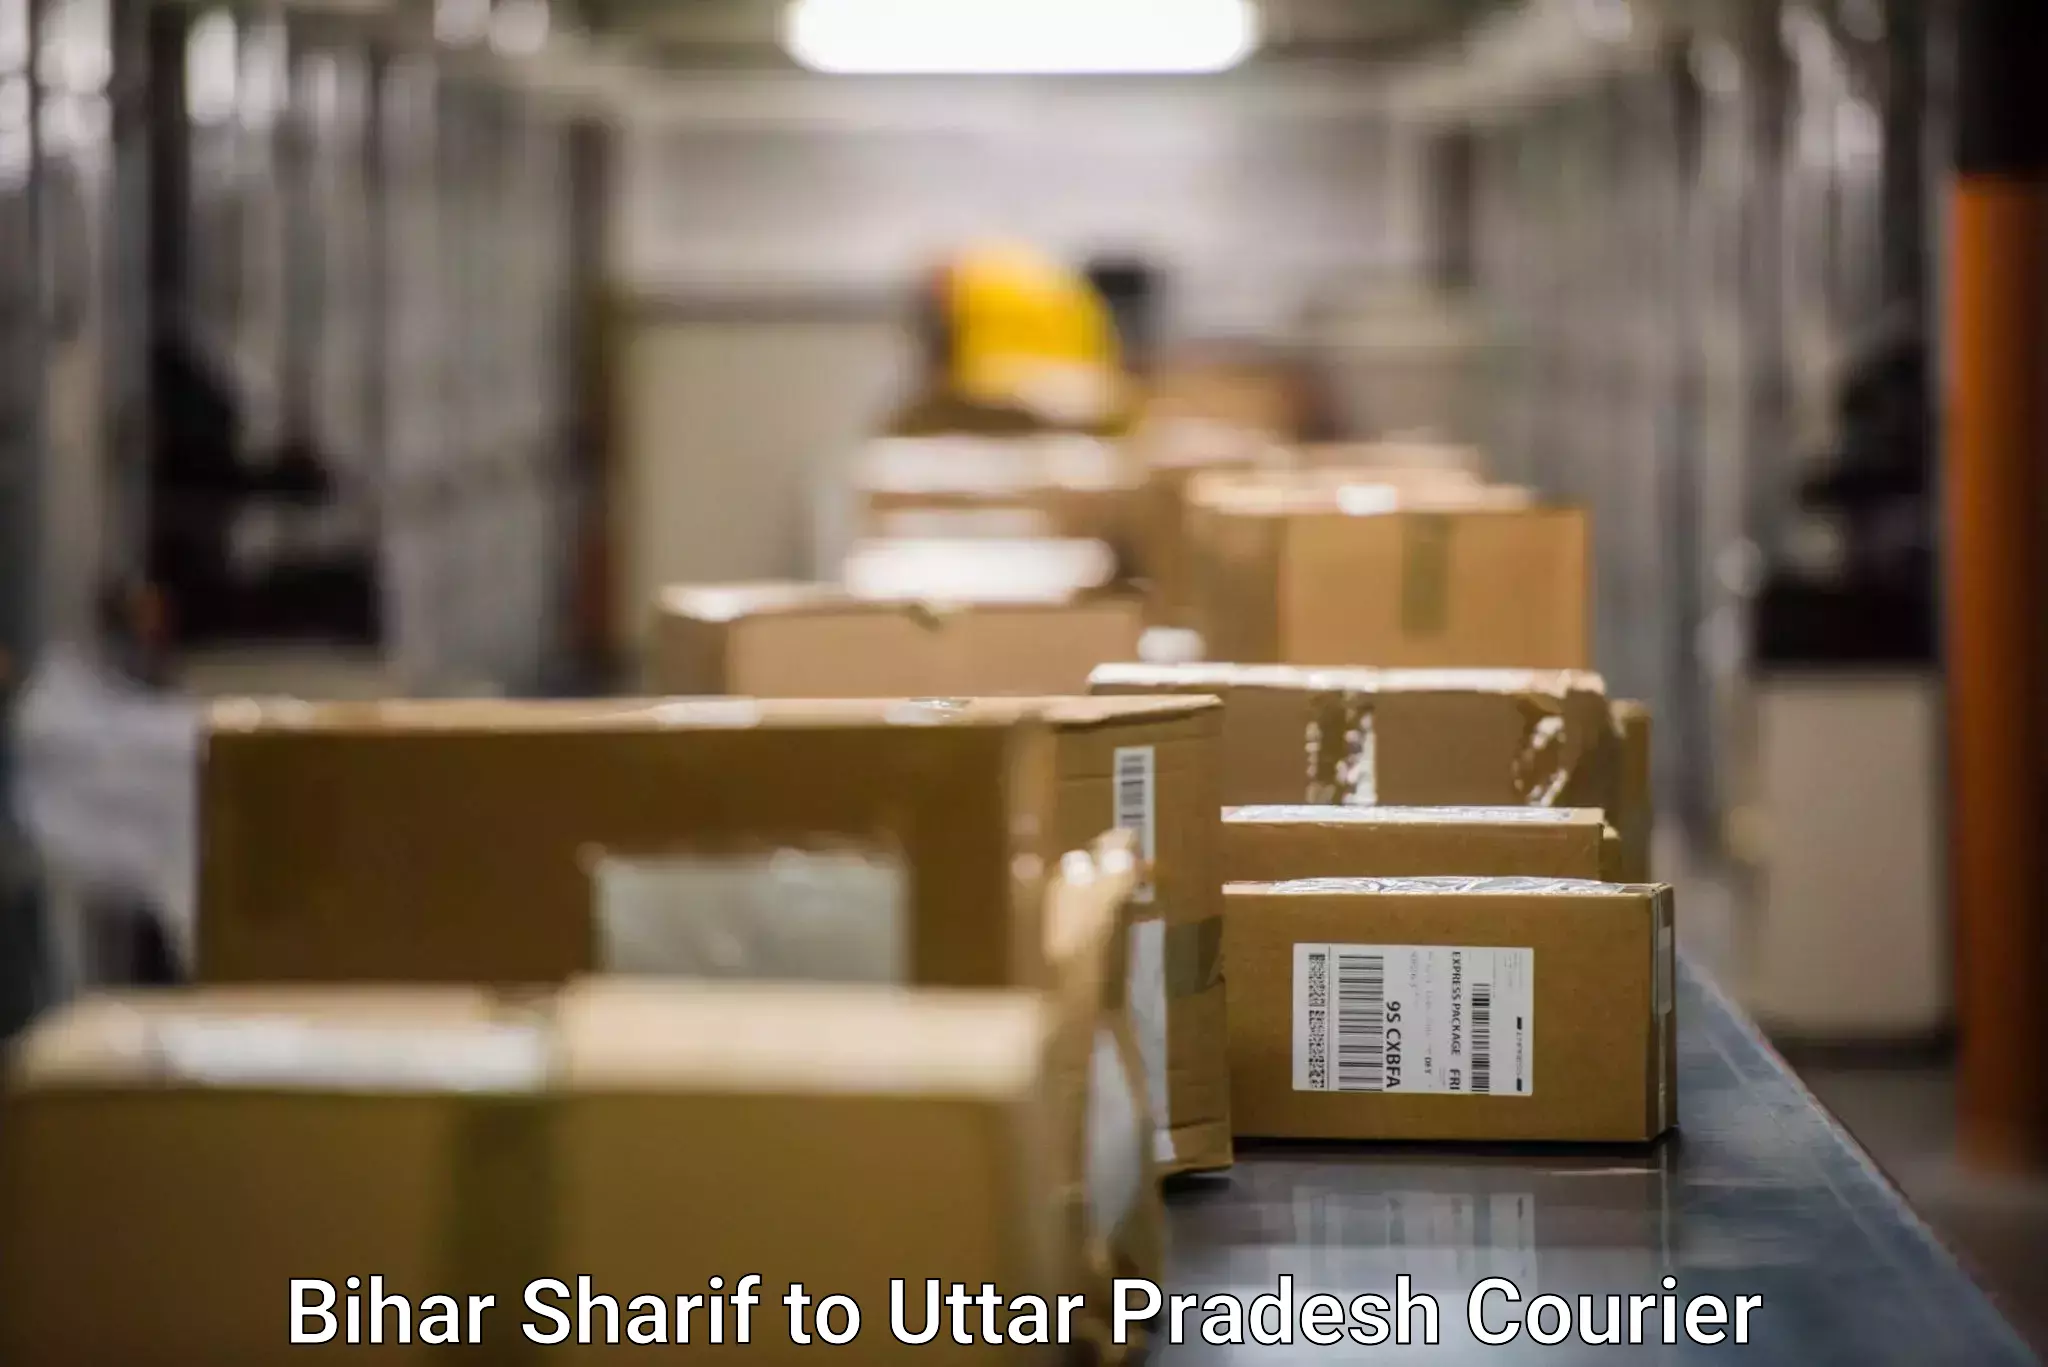 Online courier booking Bihar Sharif to Aunrihar